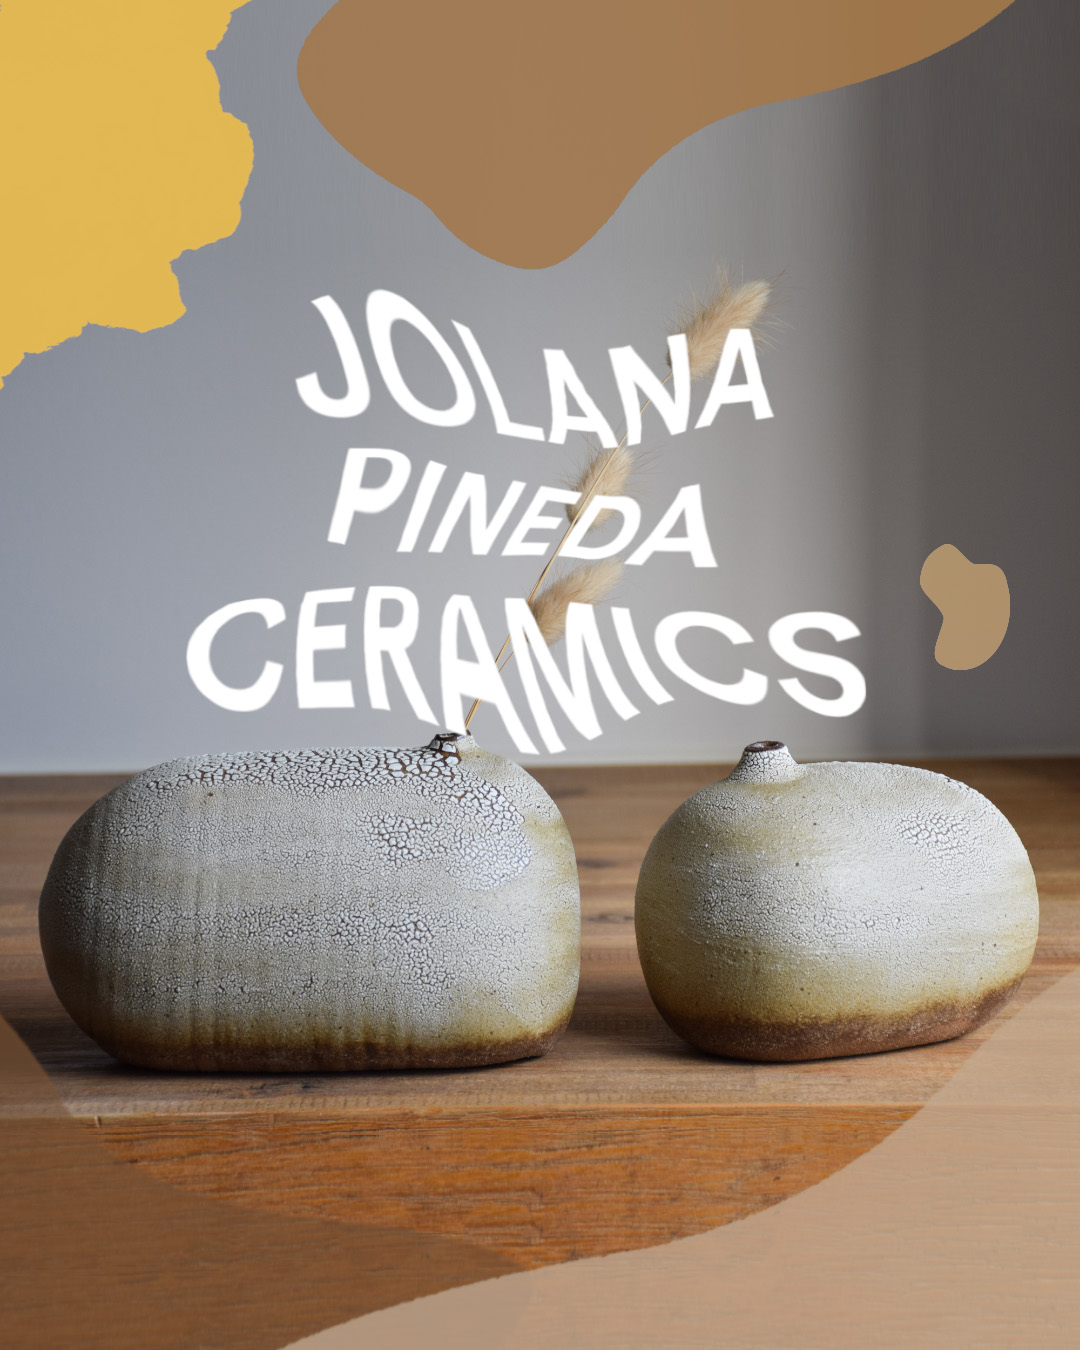 JOLANA PINEDA CERAMICS